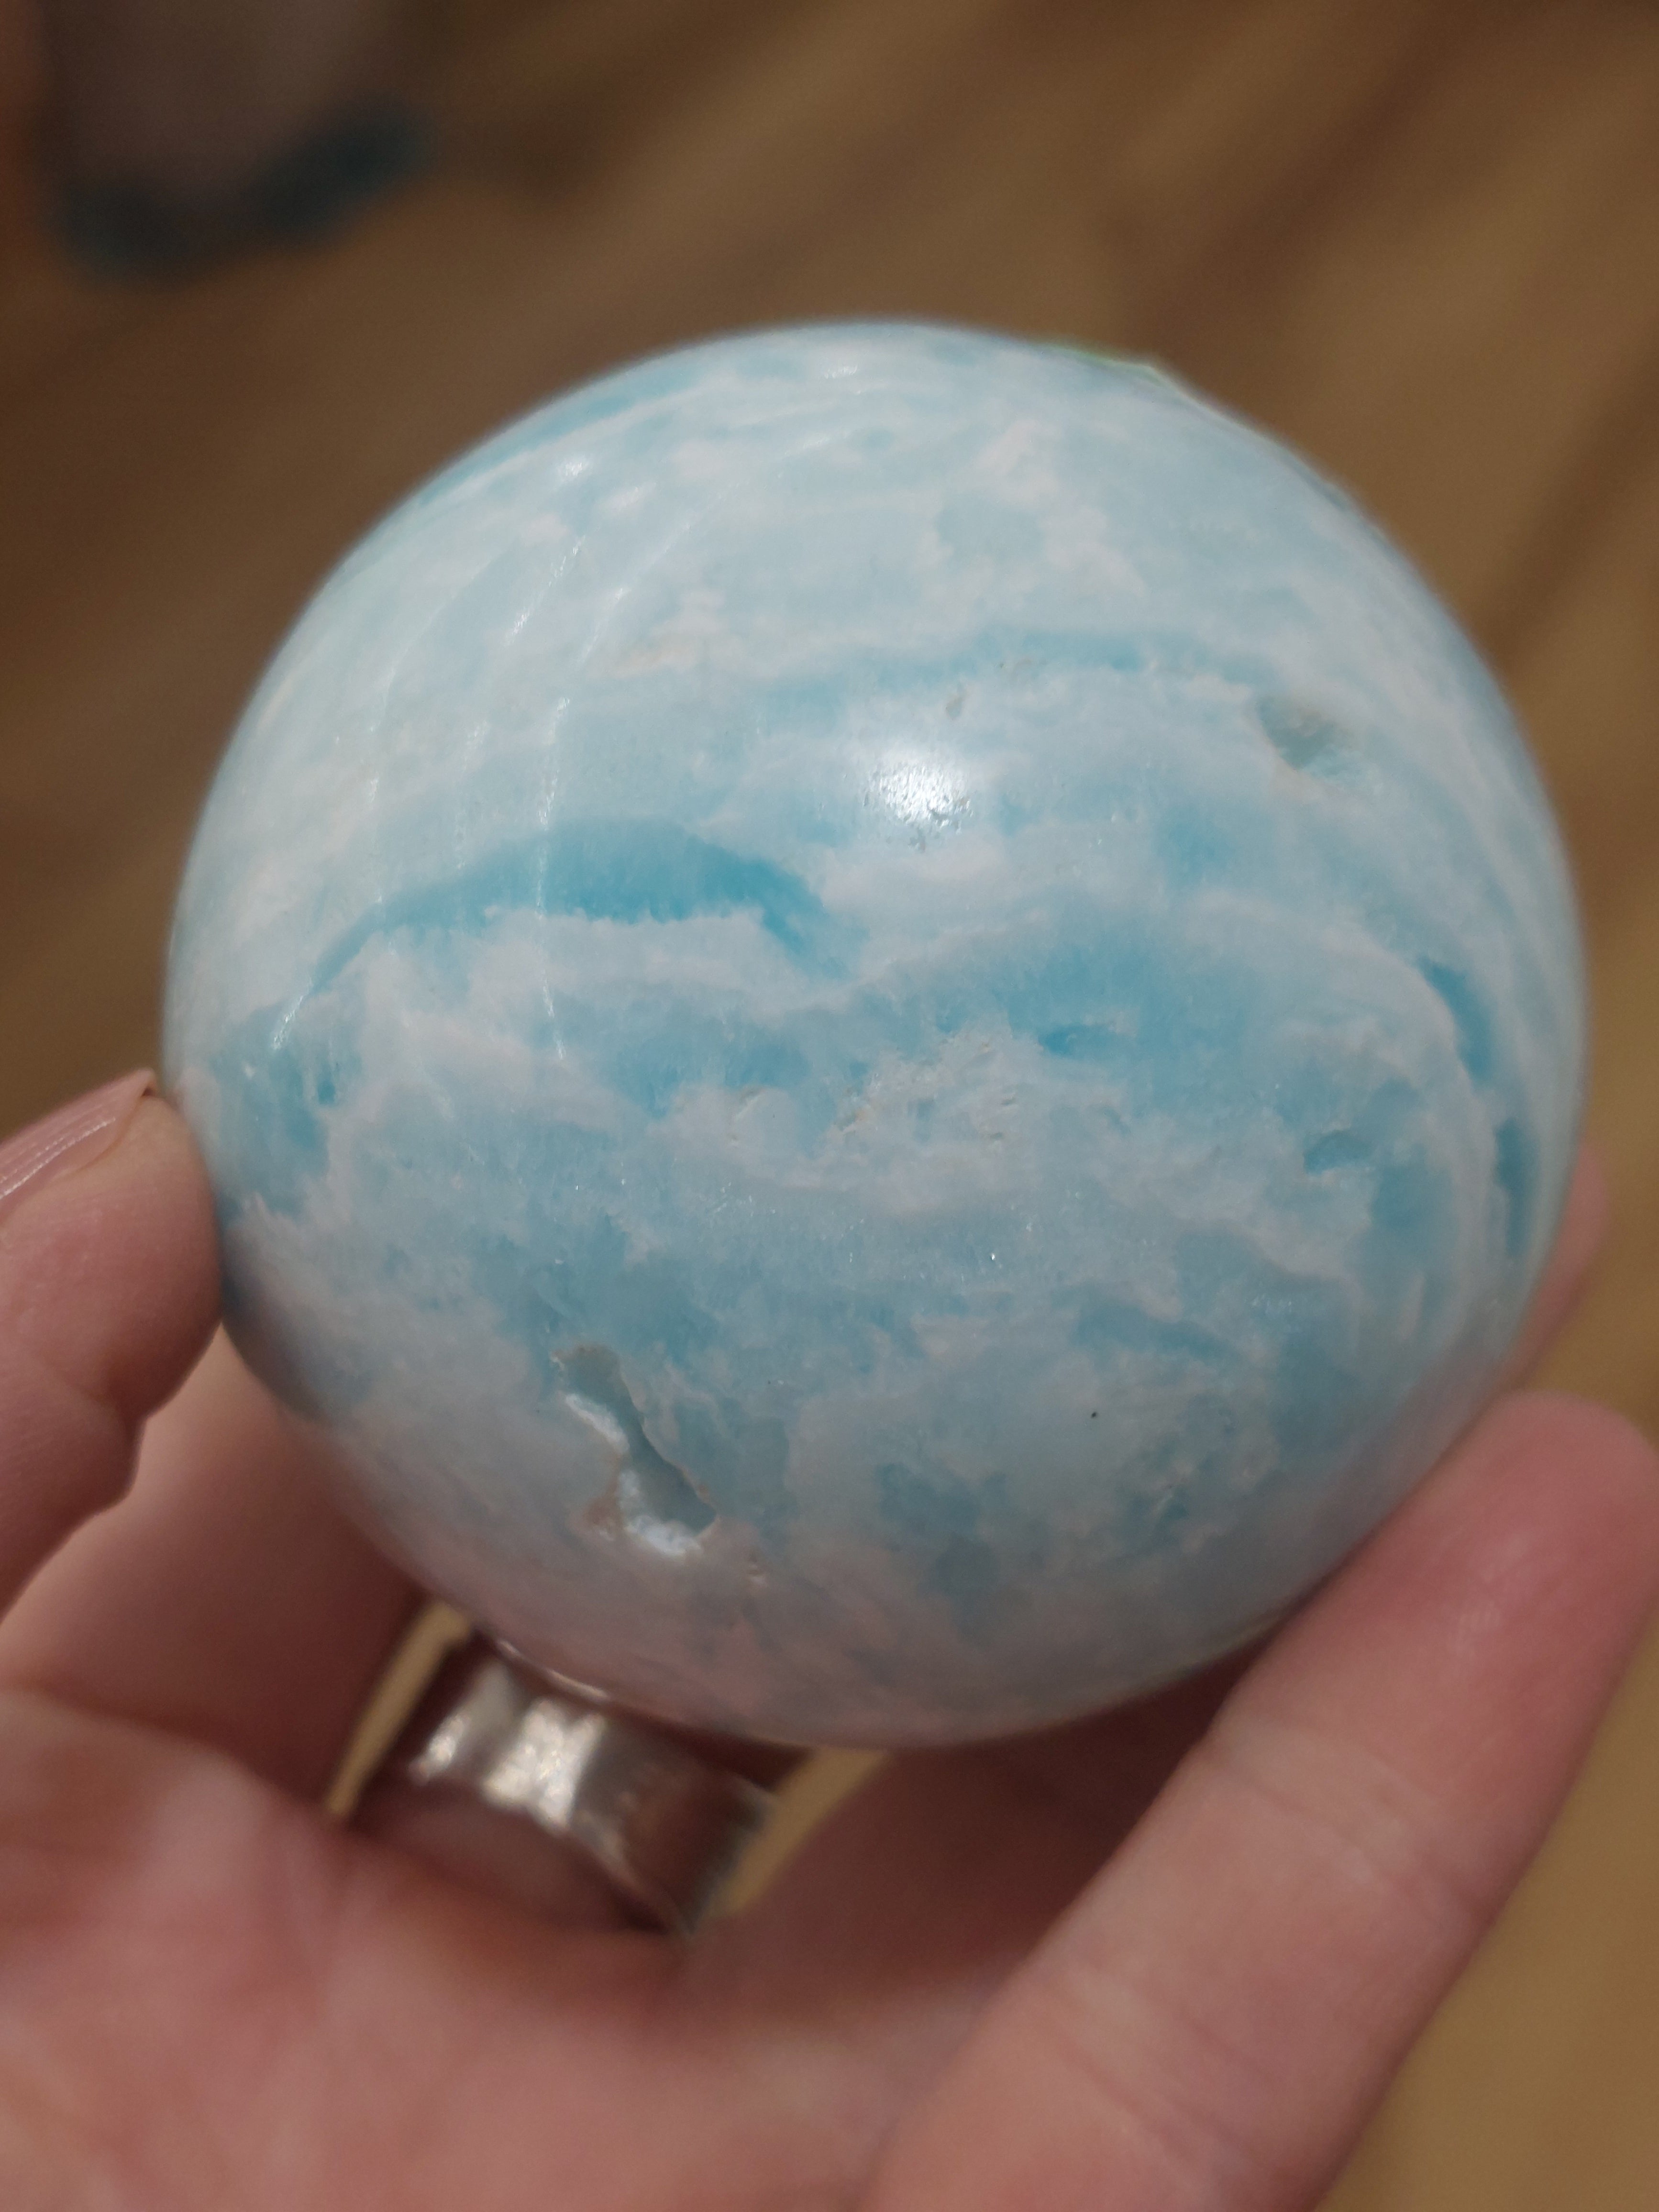 Carribean Calcite Sphere - 6.2cm (diameter)